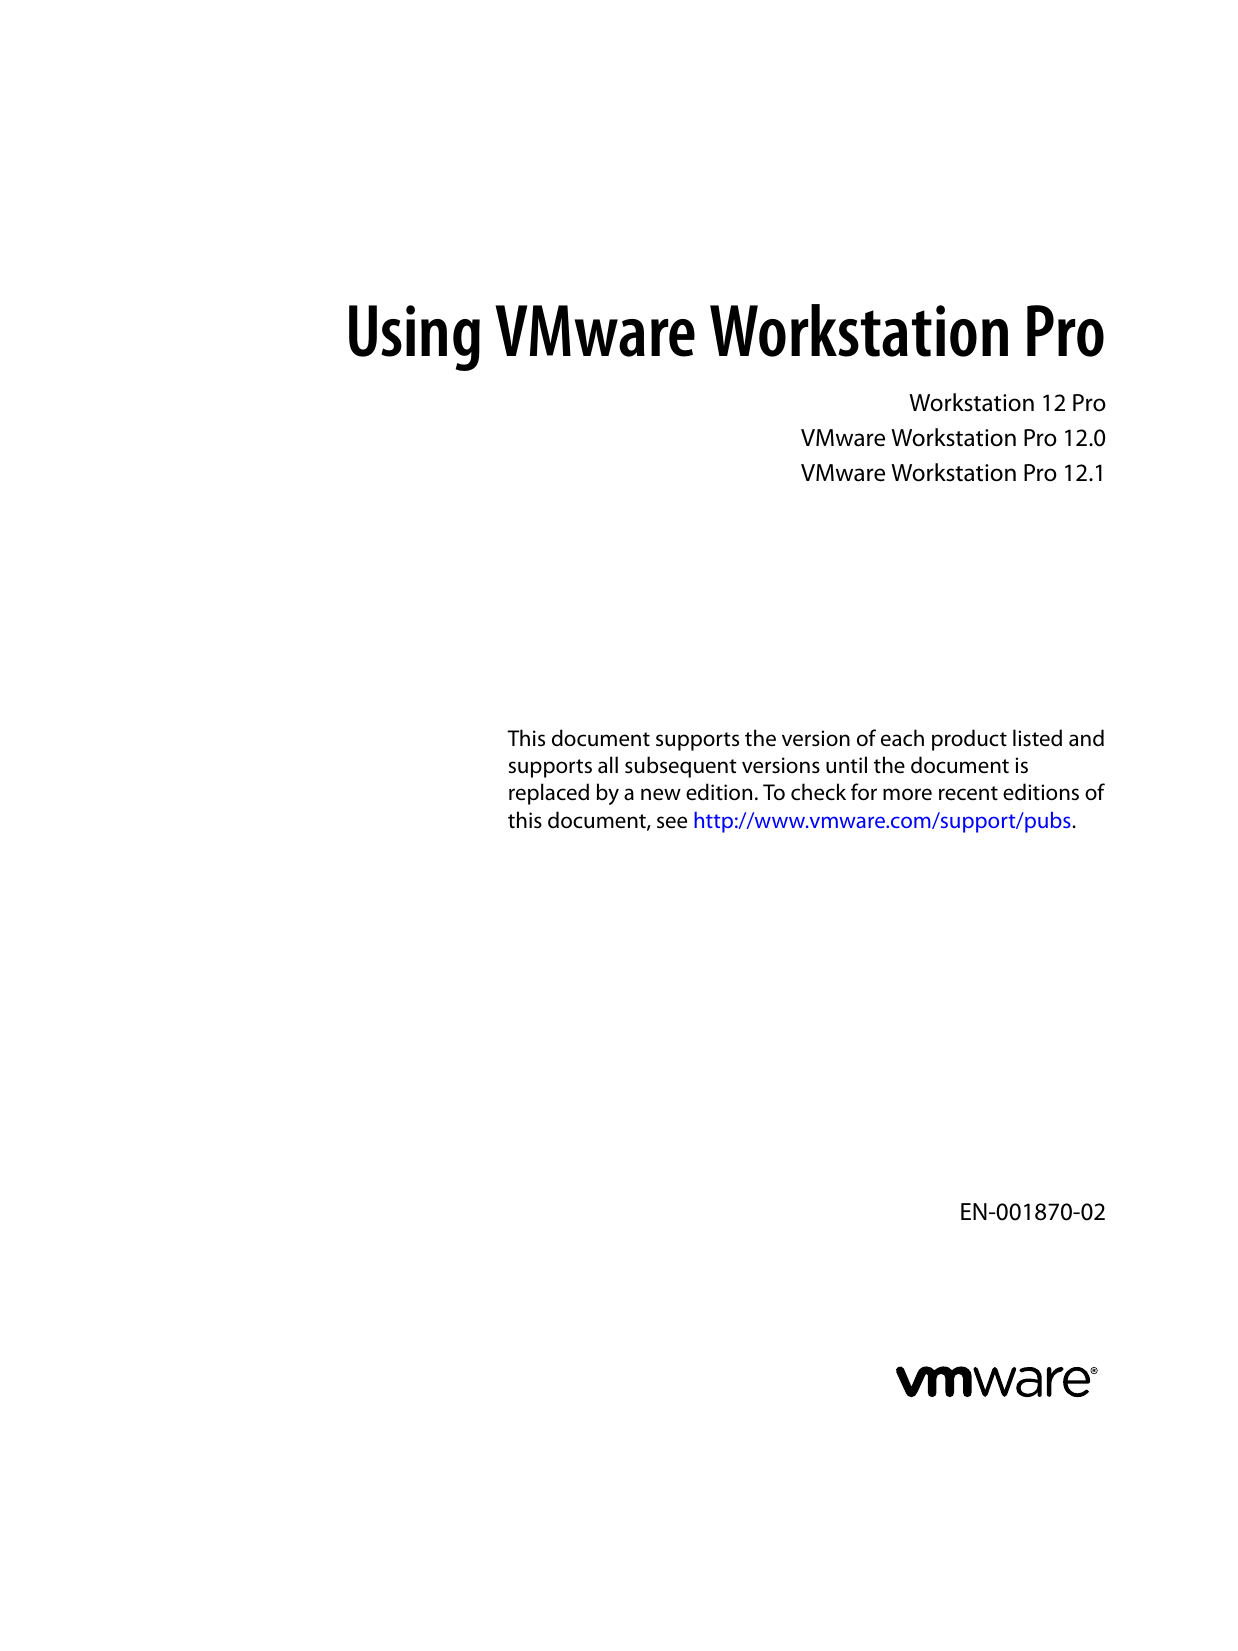 vmware workstation 12 pro version 12.1